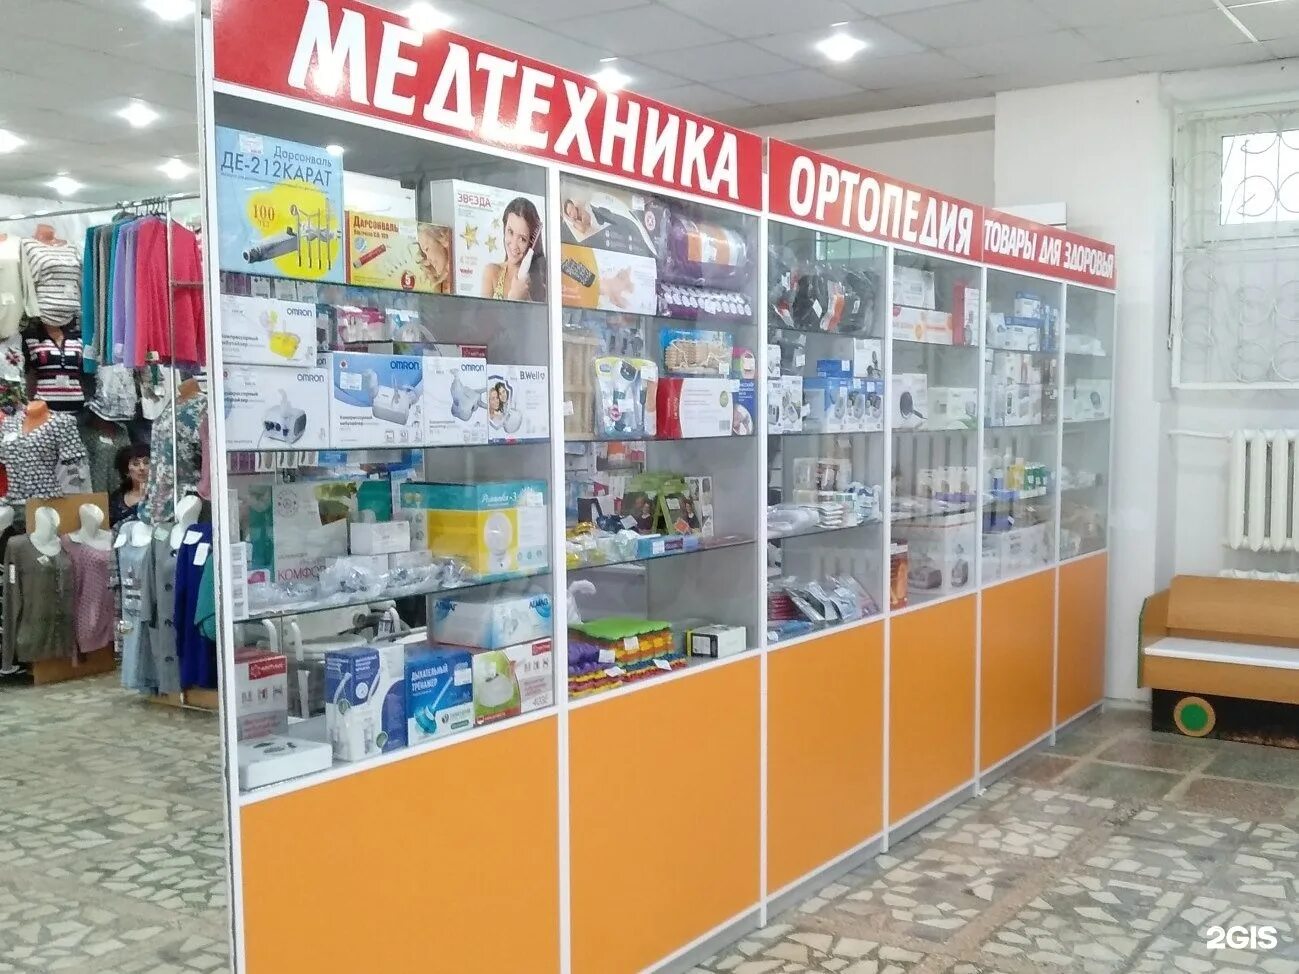 Телефон магазина медтехники в москве. Магазин медтехники. Магазин медтехники фото. Магазин медоборудования. Медтехника магазины в Москве.